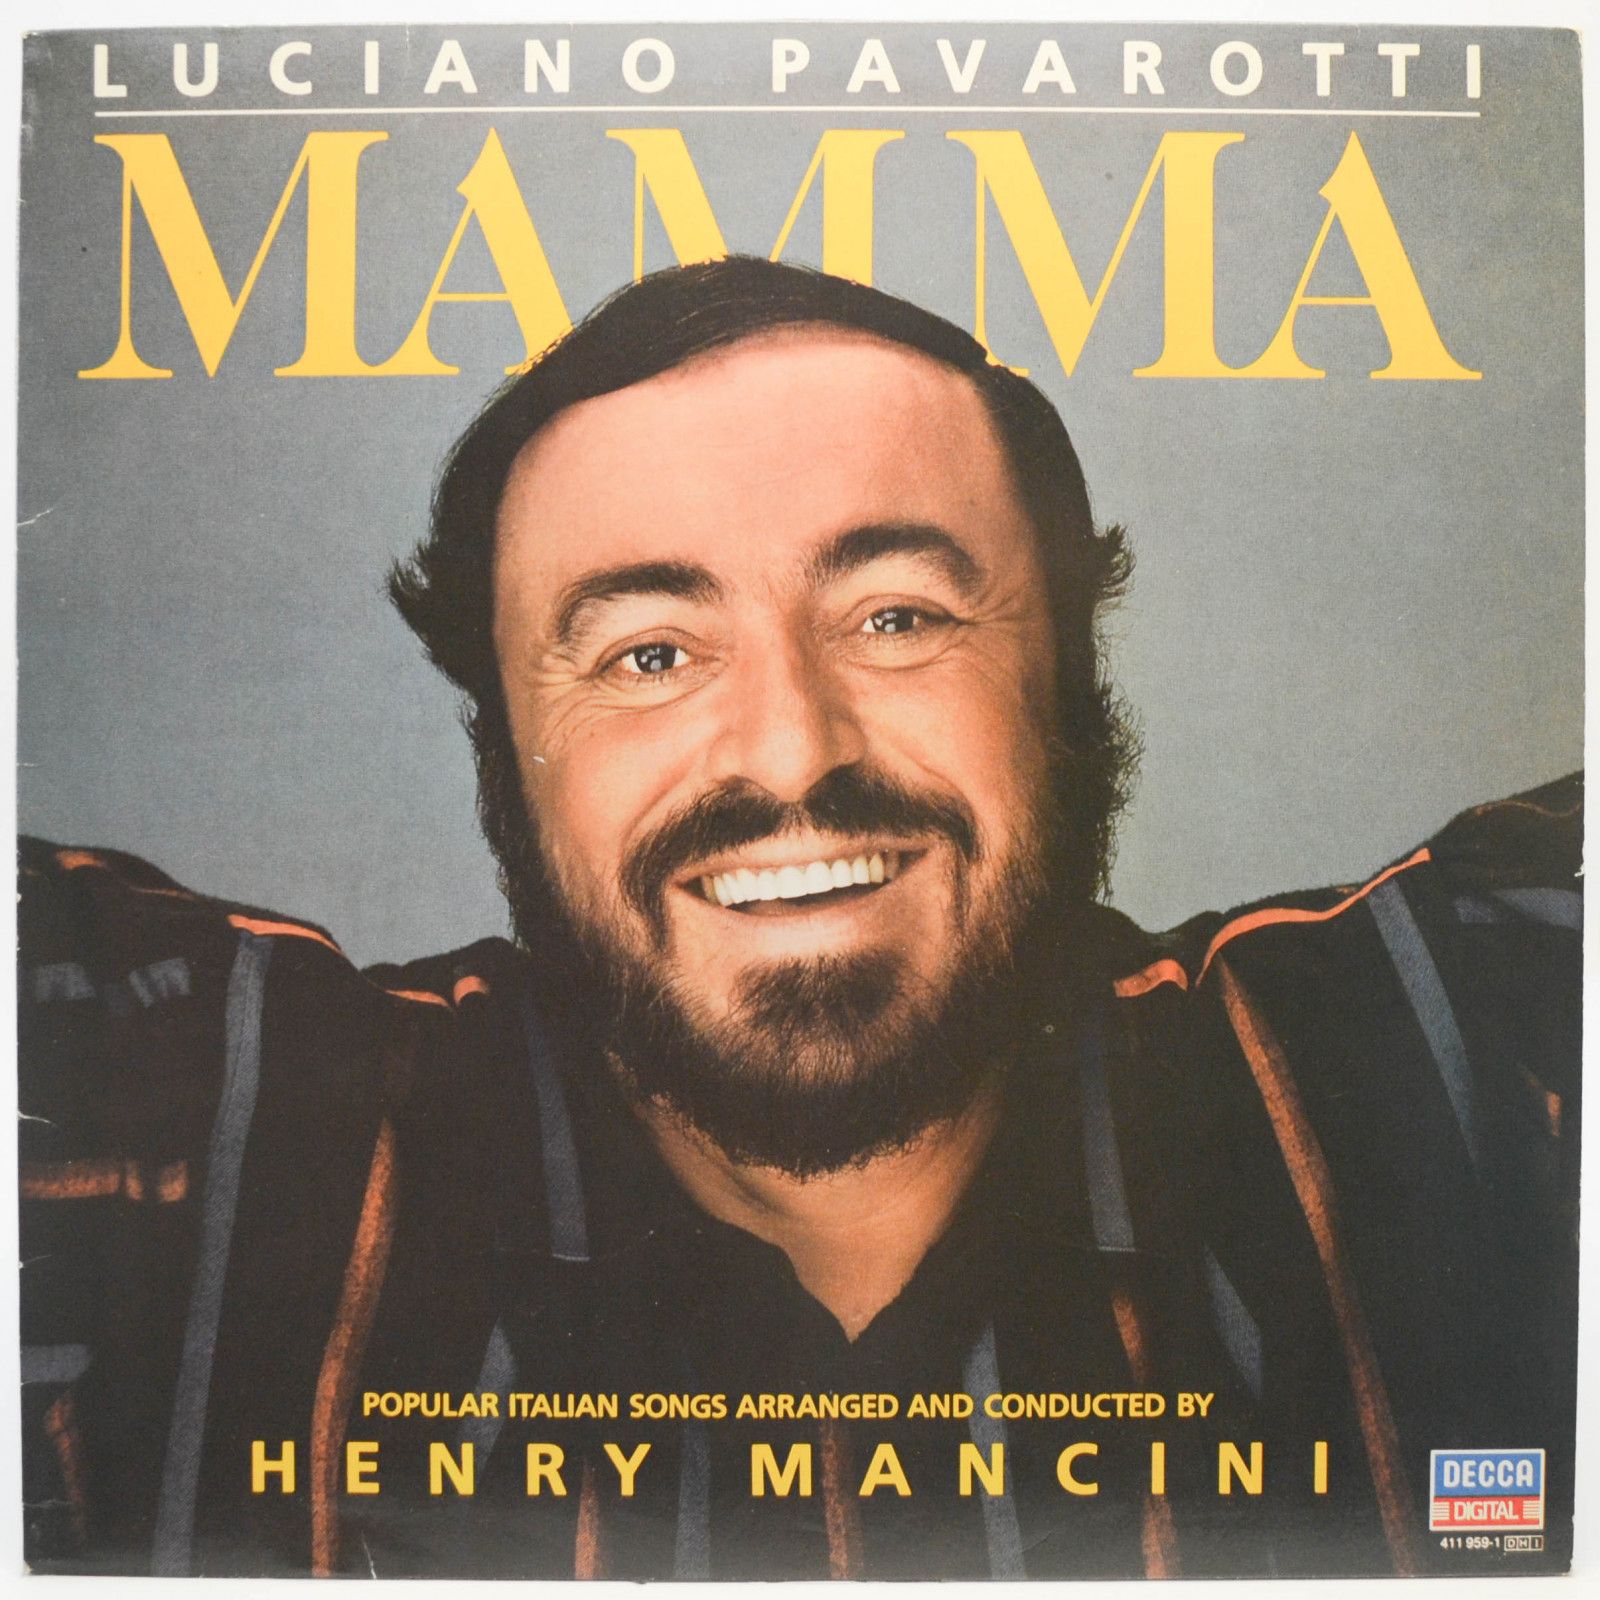 Luciano Pavarotti / Henry Mancini — Mamma (1-st, Italy), 1984